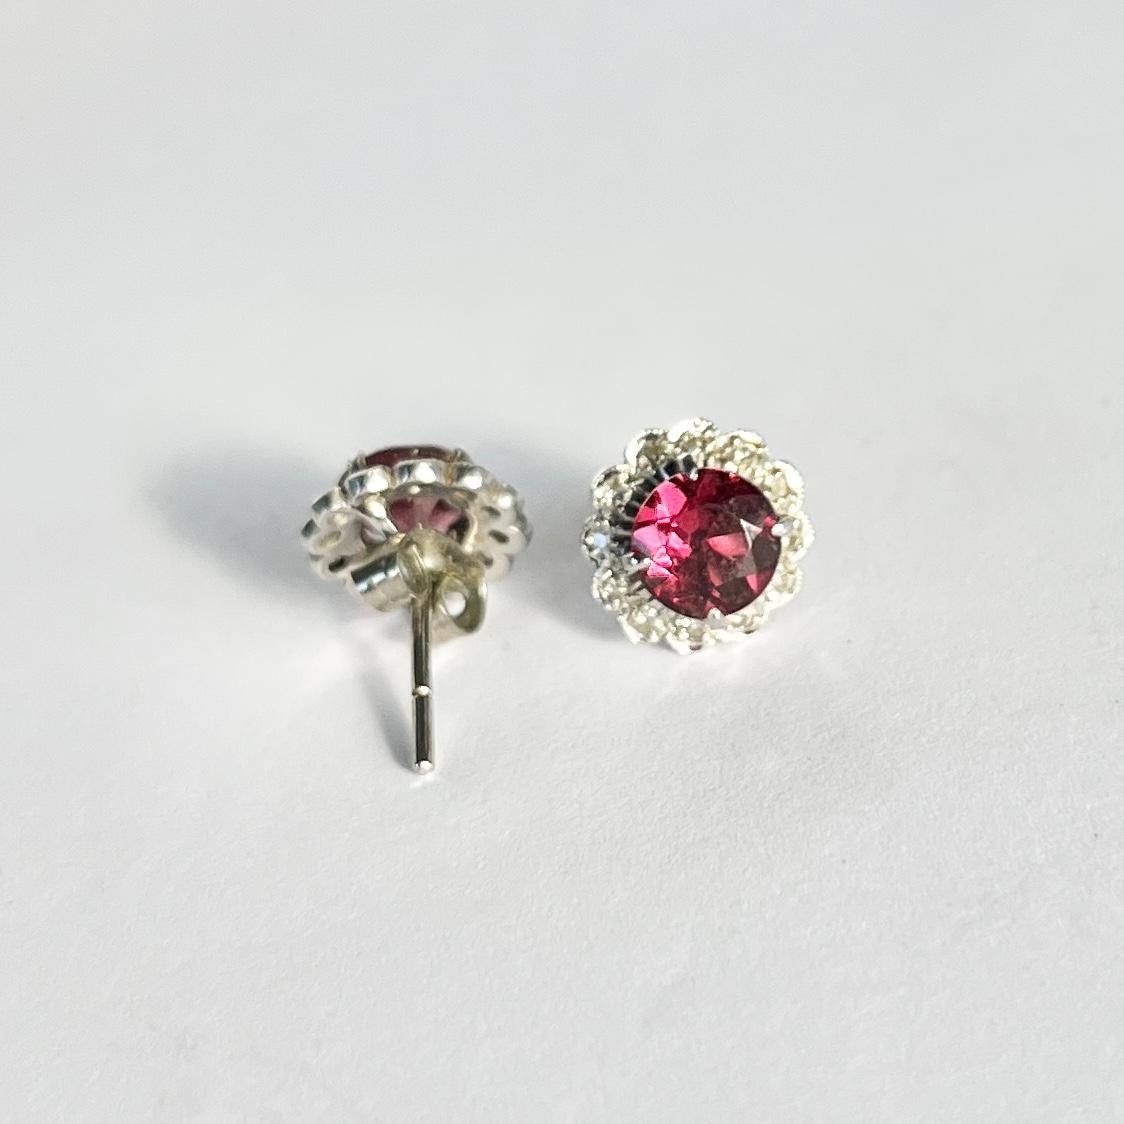 Die 1-karätigen Granate in der Mitte dieser Büschel haben eine wunderschöne, satte rosa Farbe und sind von einem Kranz glitzernder Diamanten umgeben. Die Diamanten belaufen sich auf insgesamt ca. 11 pt pro Ohrring. Gefertigt aus 9 Karat